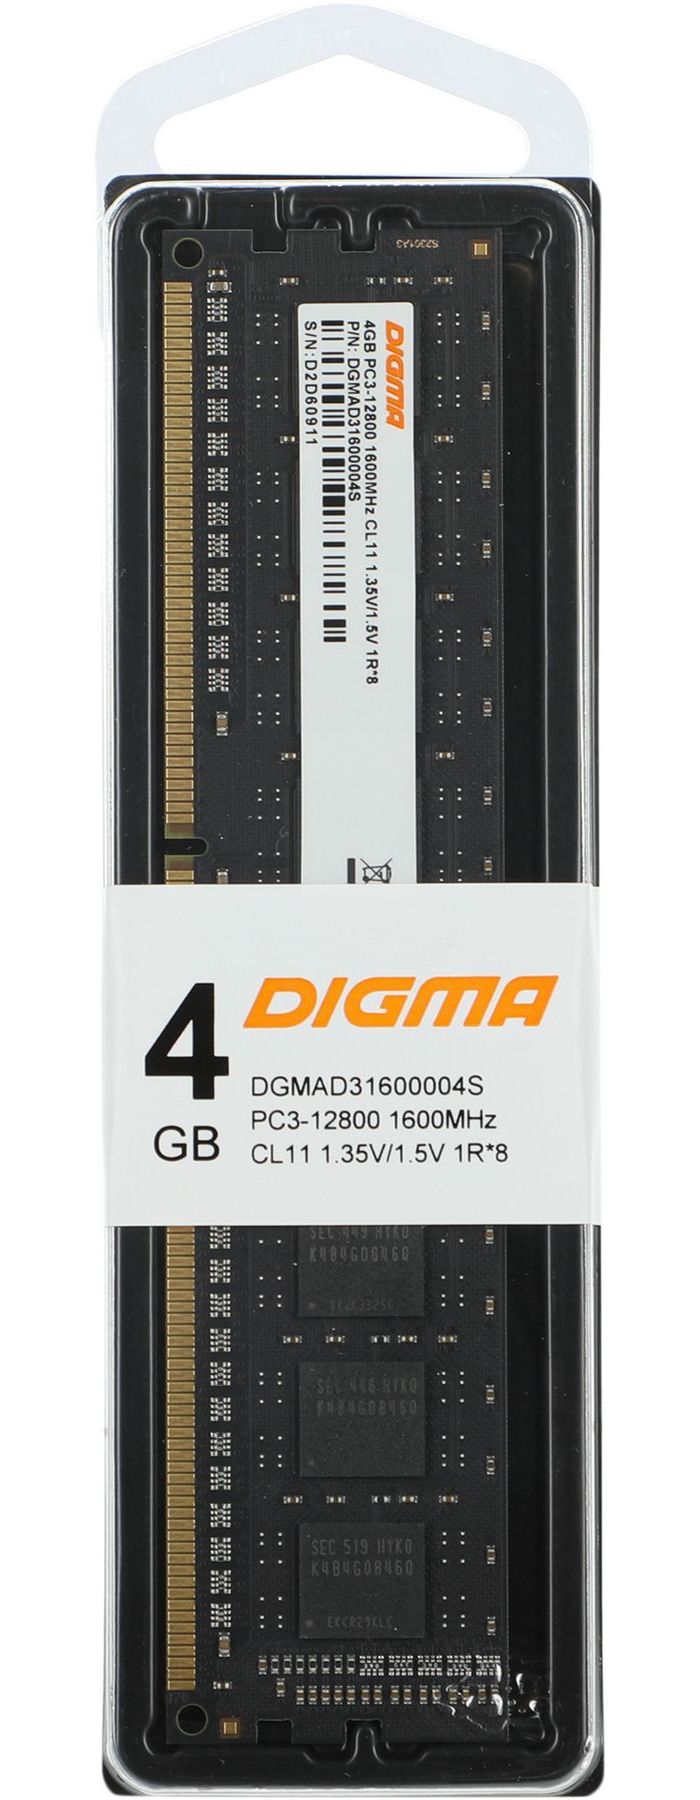 Оперативная память DDR3L Digma 4Gb 1600MHz DIMM (DGMAD31600004S) оперативная память 8gb pc3 12800 1600mhz ddr3l dimm ecc dimm w ts 1 35v kvr16le11 8hb